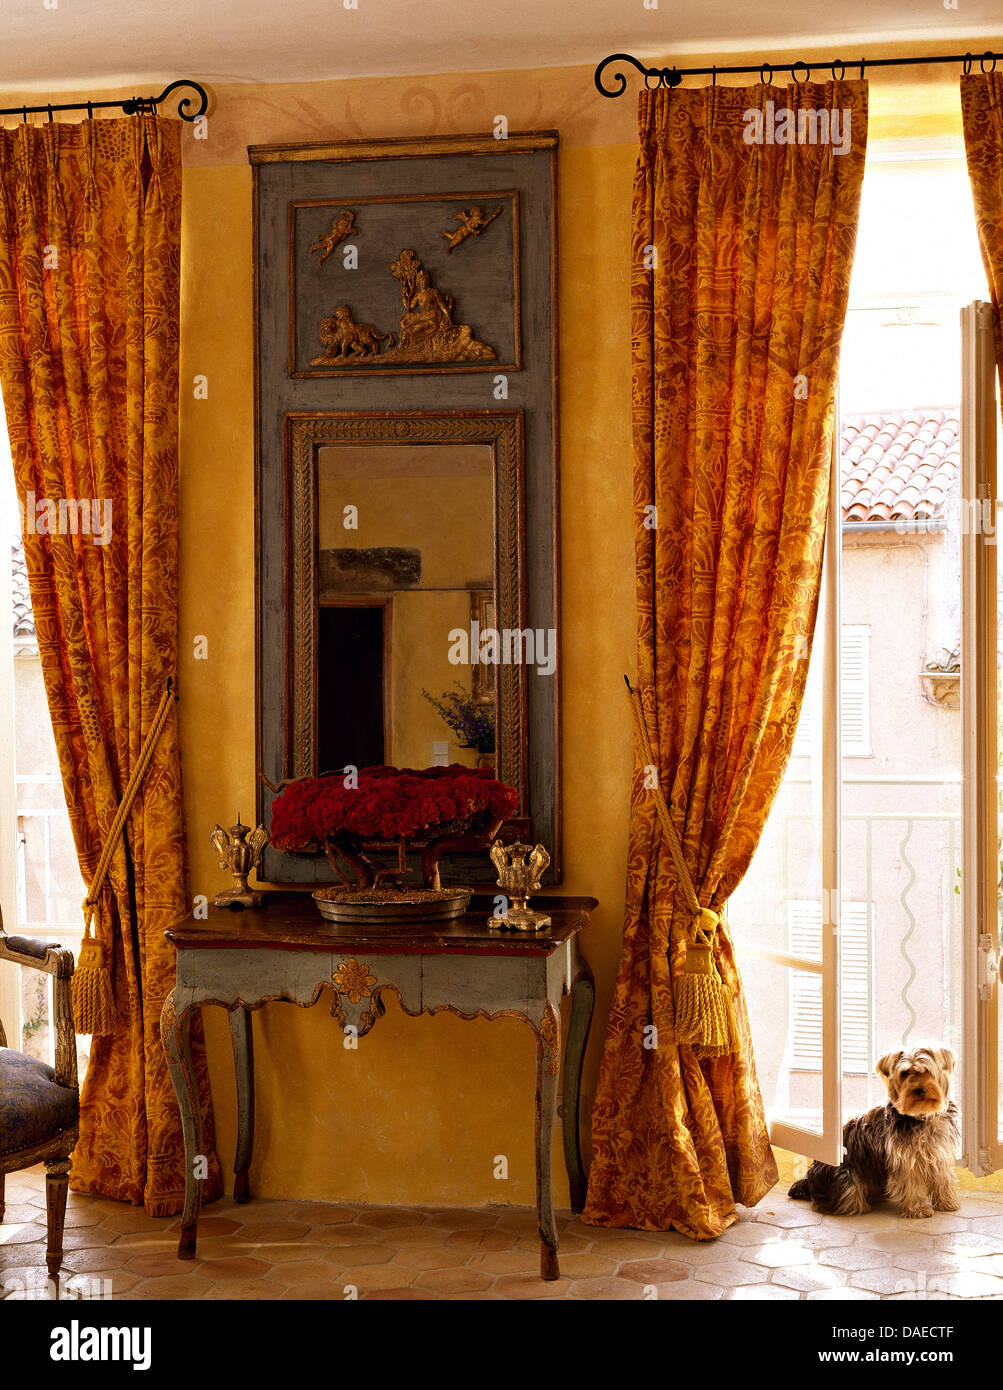 Grau lackiert, antiker Spiegel und Konsole Tisch zwischen französische  Fenster mit gemusterten gelb gemusterten Gardinen im Wohnzimmer  Stockfotografie - Alamy